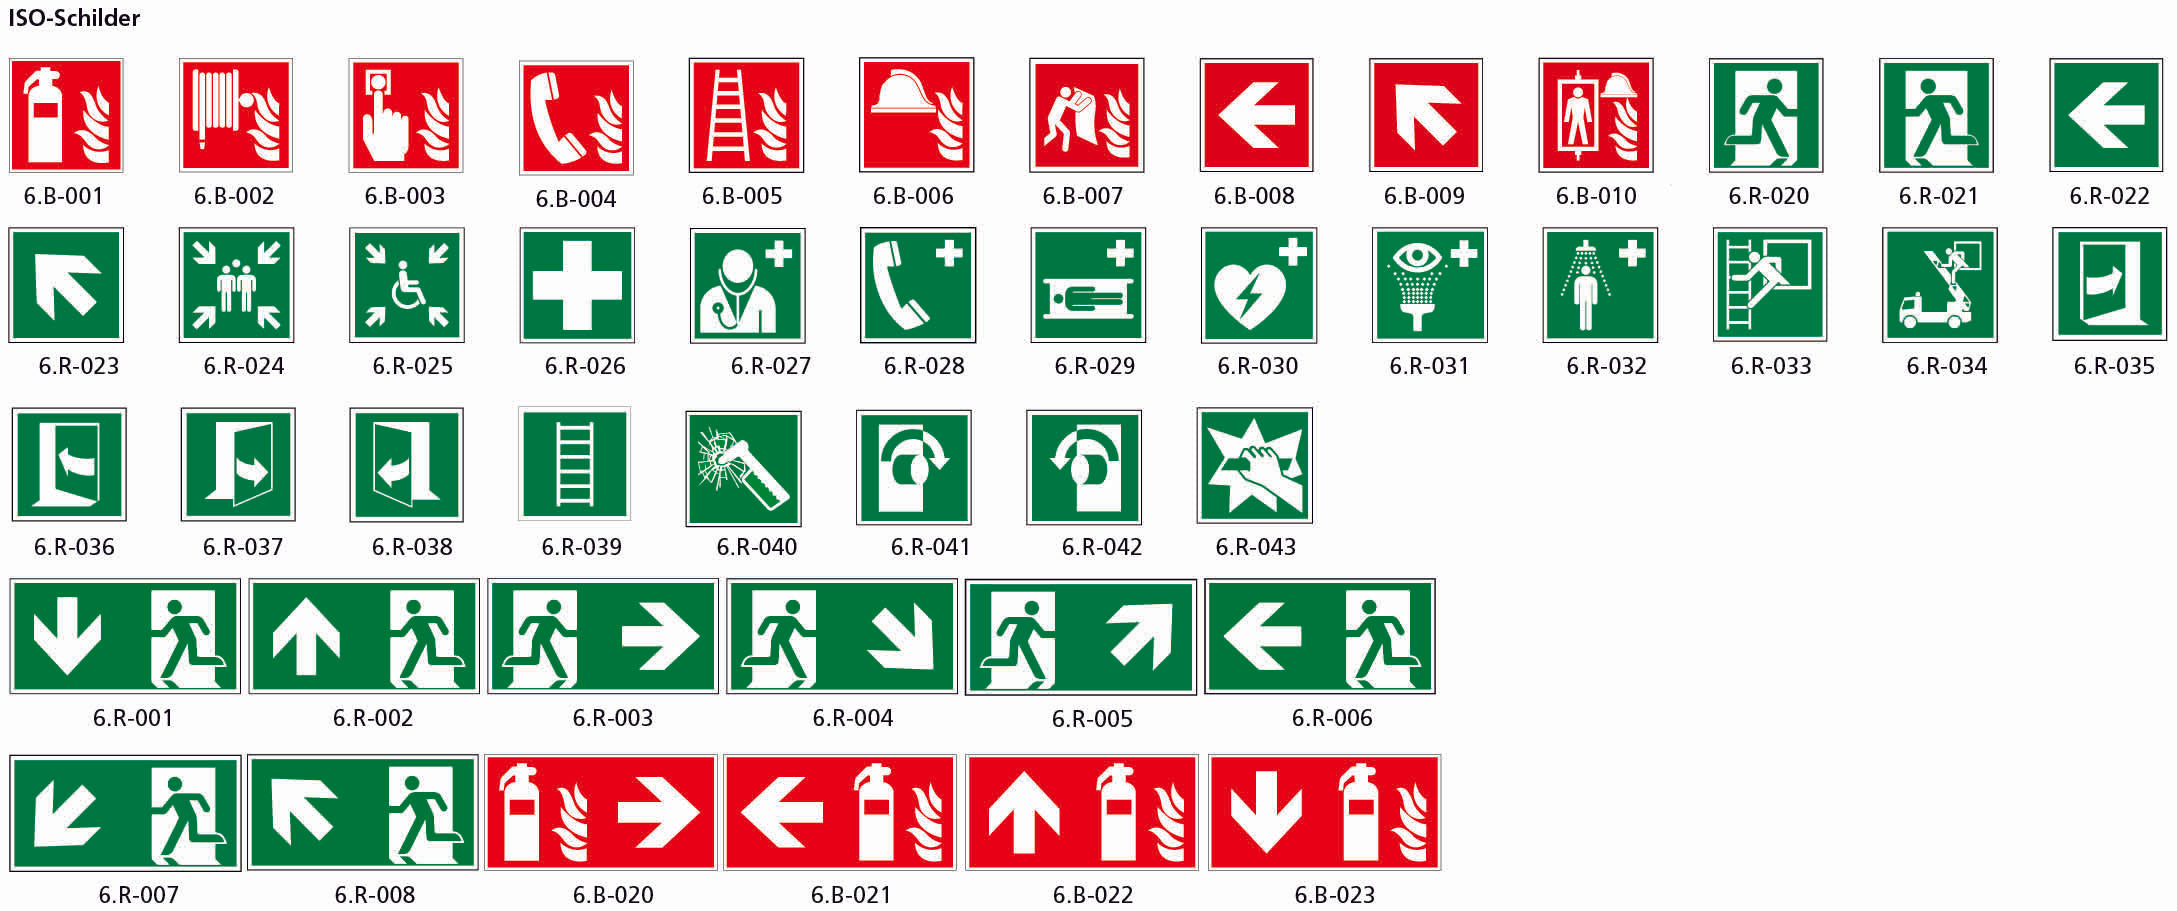 Fahnenschild doppelseitig, Rettungs- und Brandschutzzeichen, nachleuchtend, PM, 400 x 200 mm, gemäss Logobibliothek